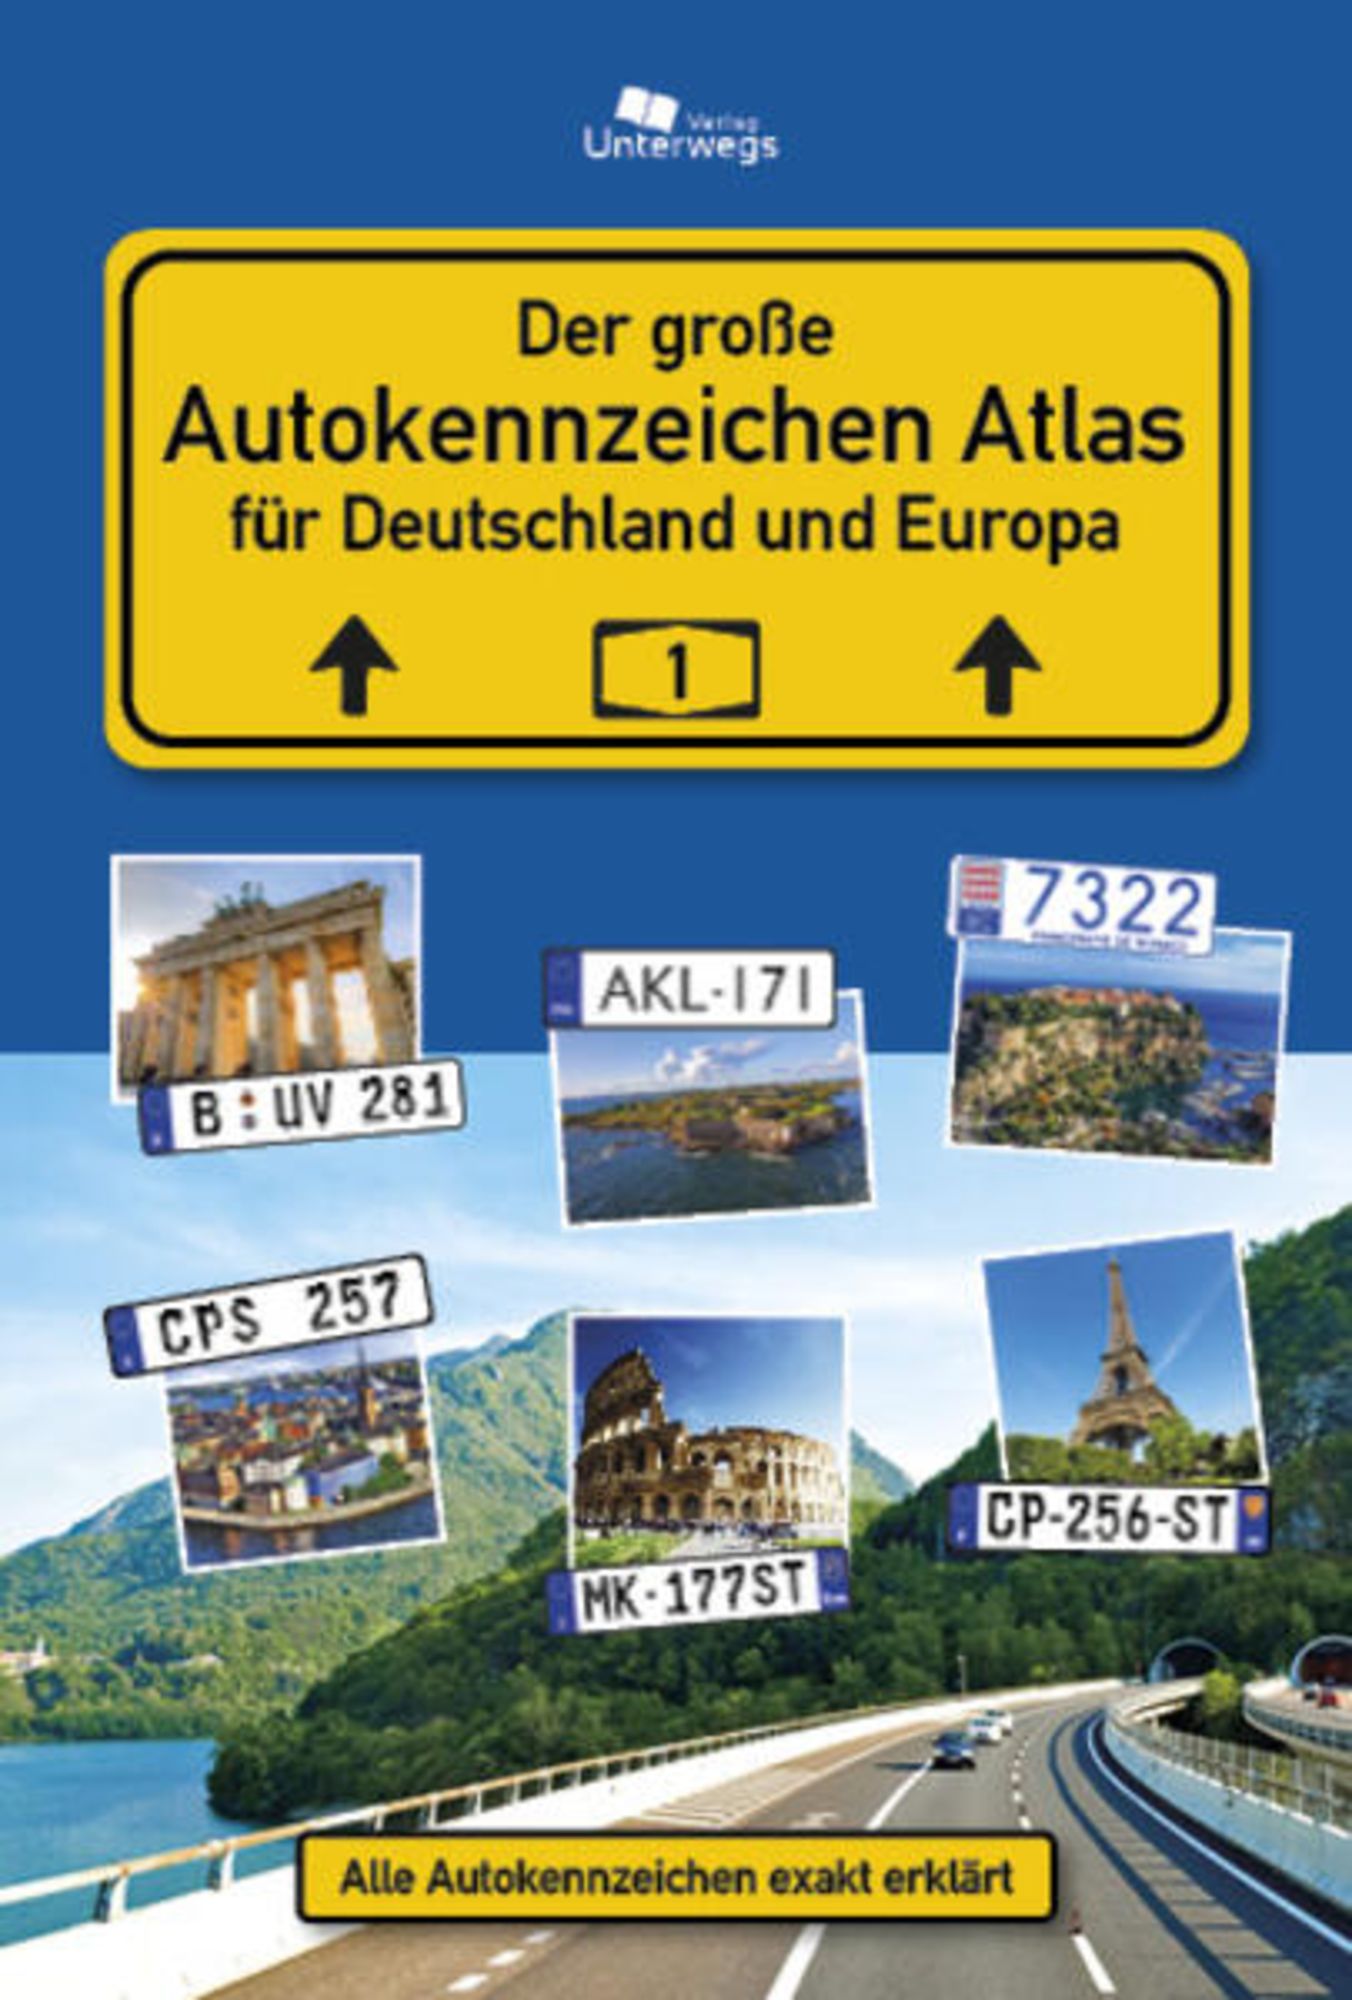 Der Große Autokennzeichen Atlas Deutschland und Europa' von